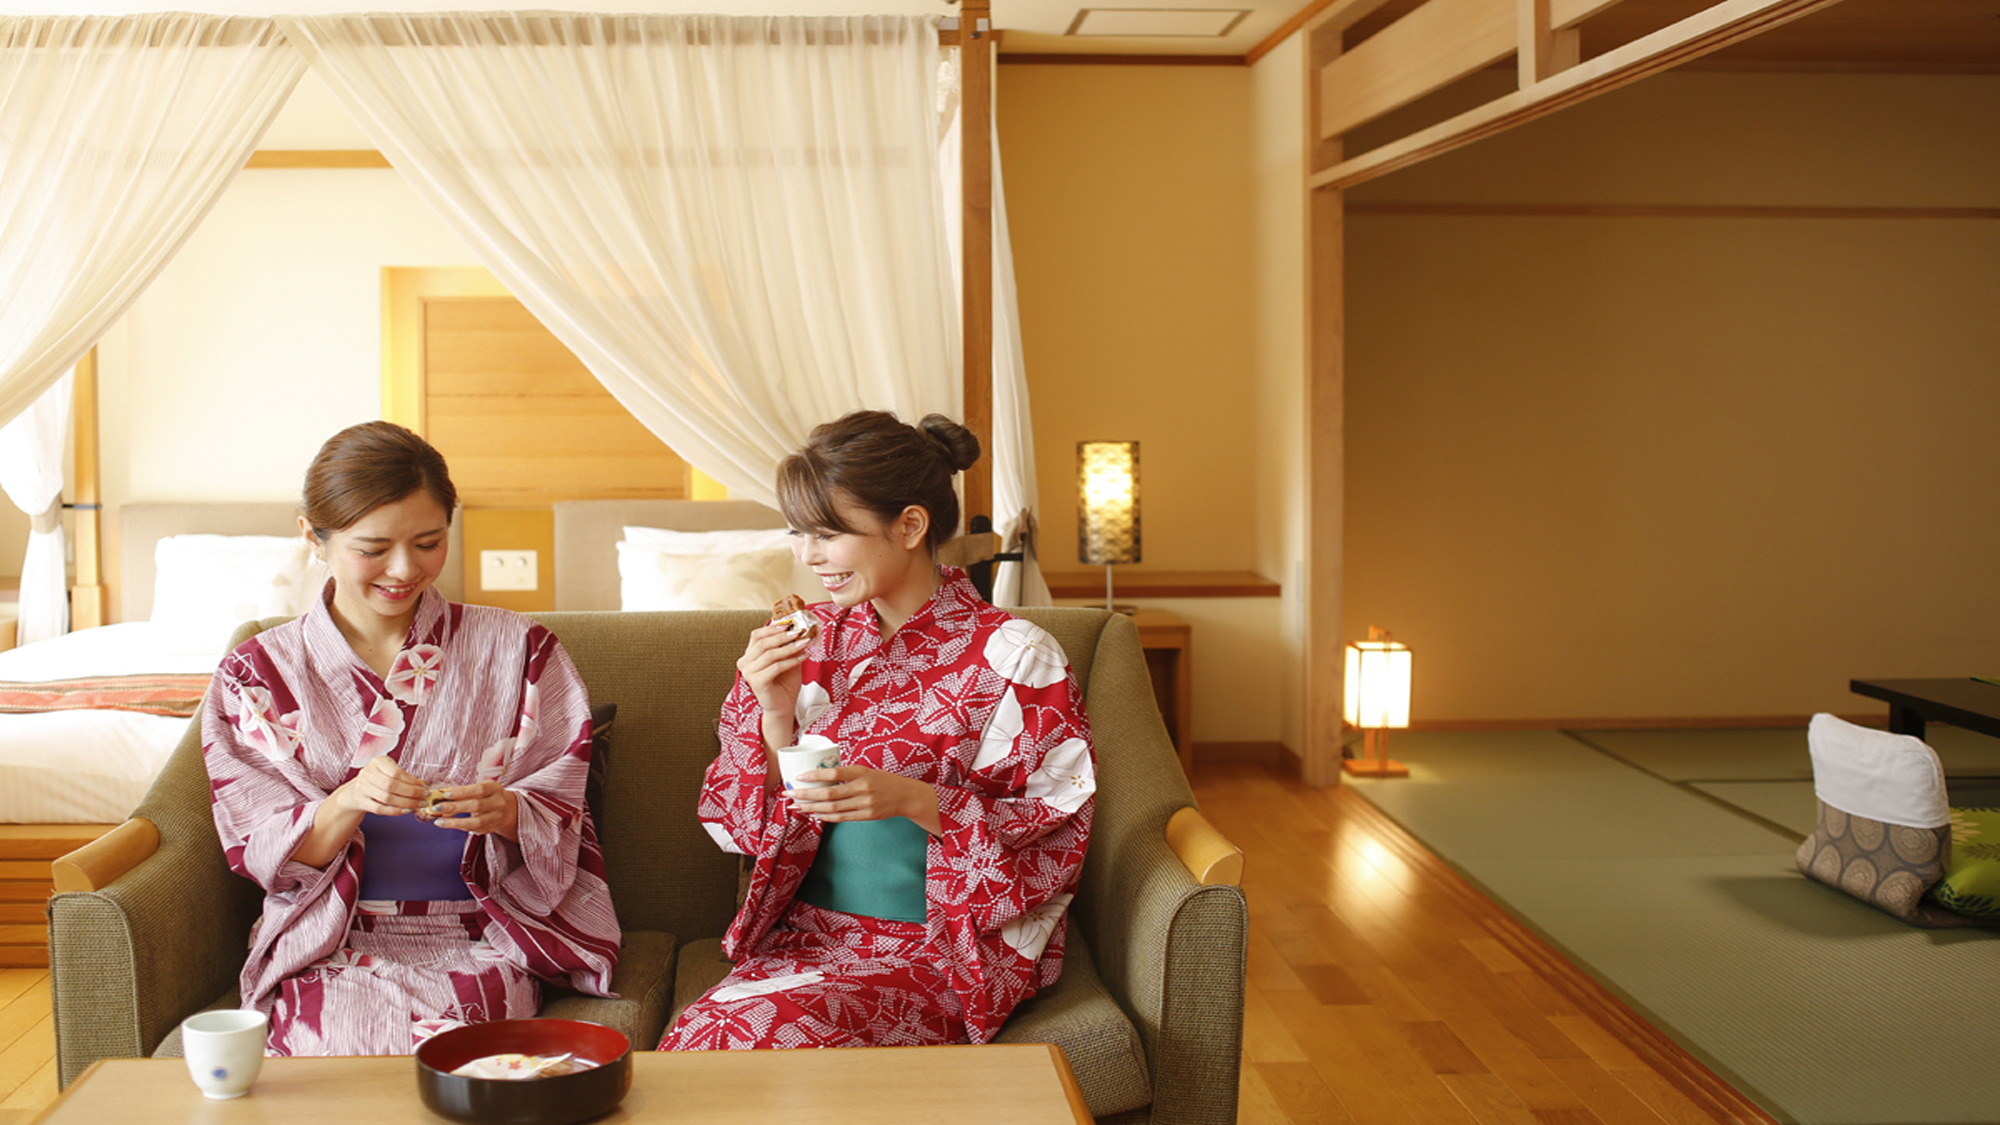 旅の思い出、お喋りもはずむ♪お部屋には松山銘菓をご用意。